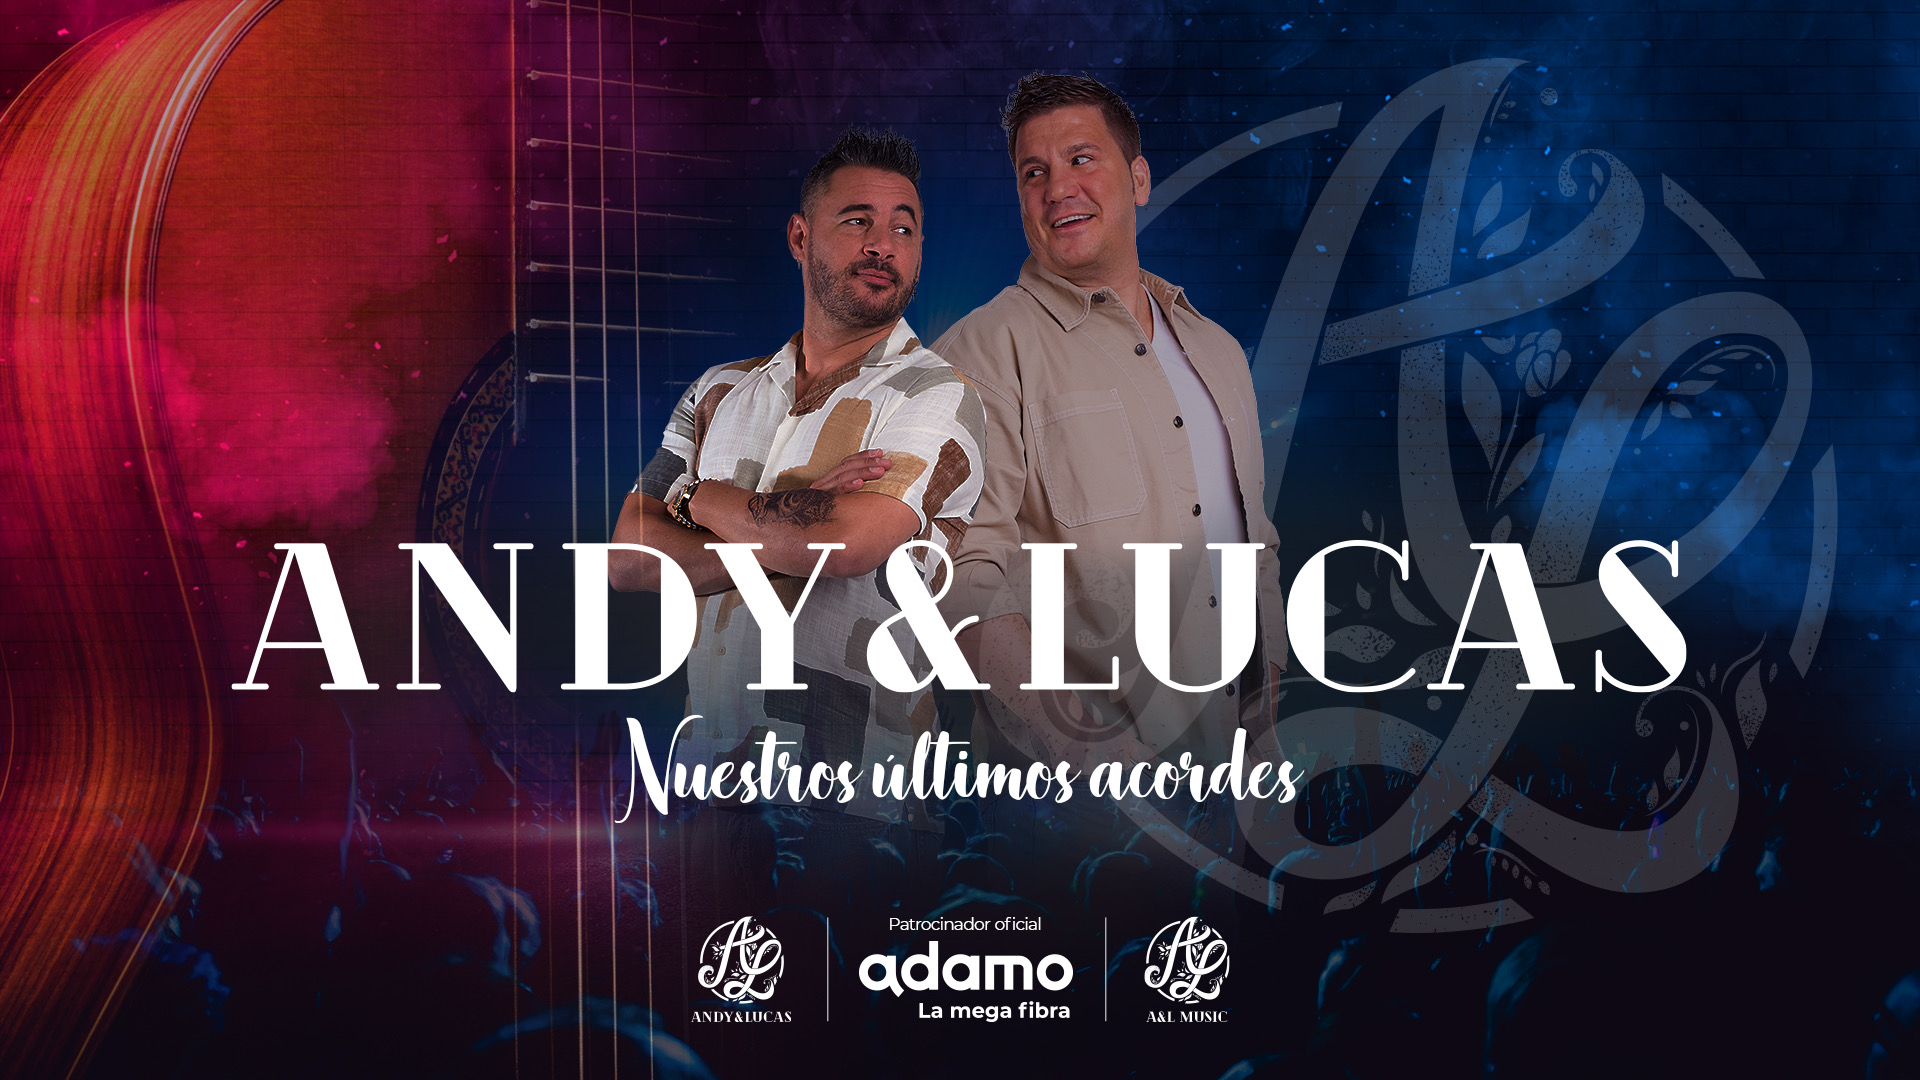 andy-y-lucas-en-barcelona-65574a0b008af0.52112832.jpeg